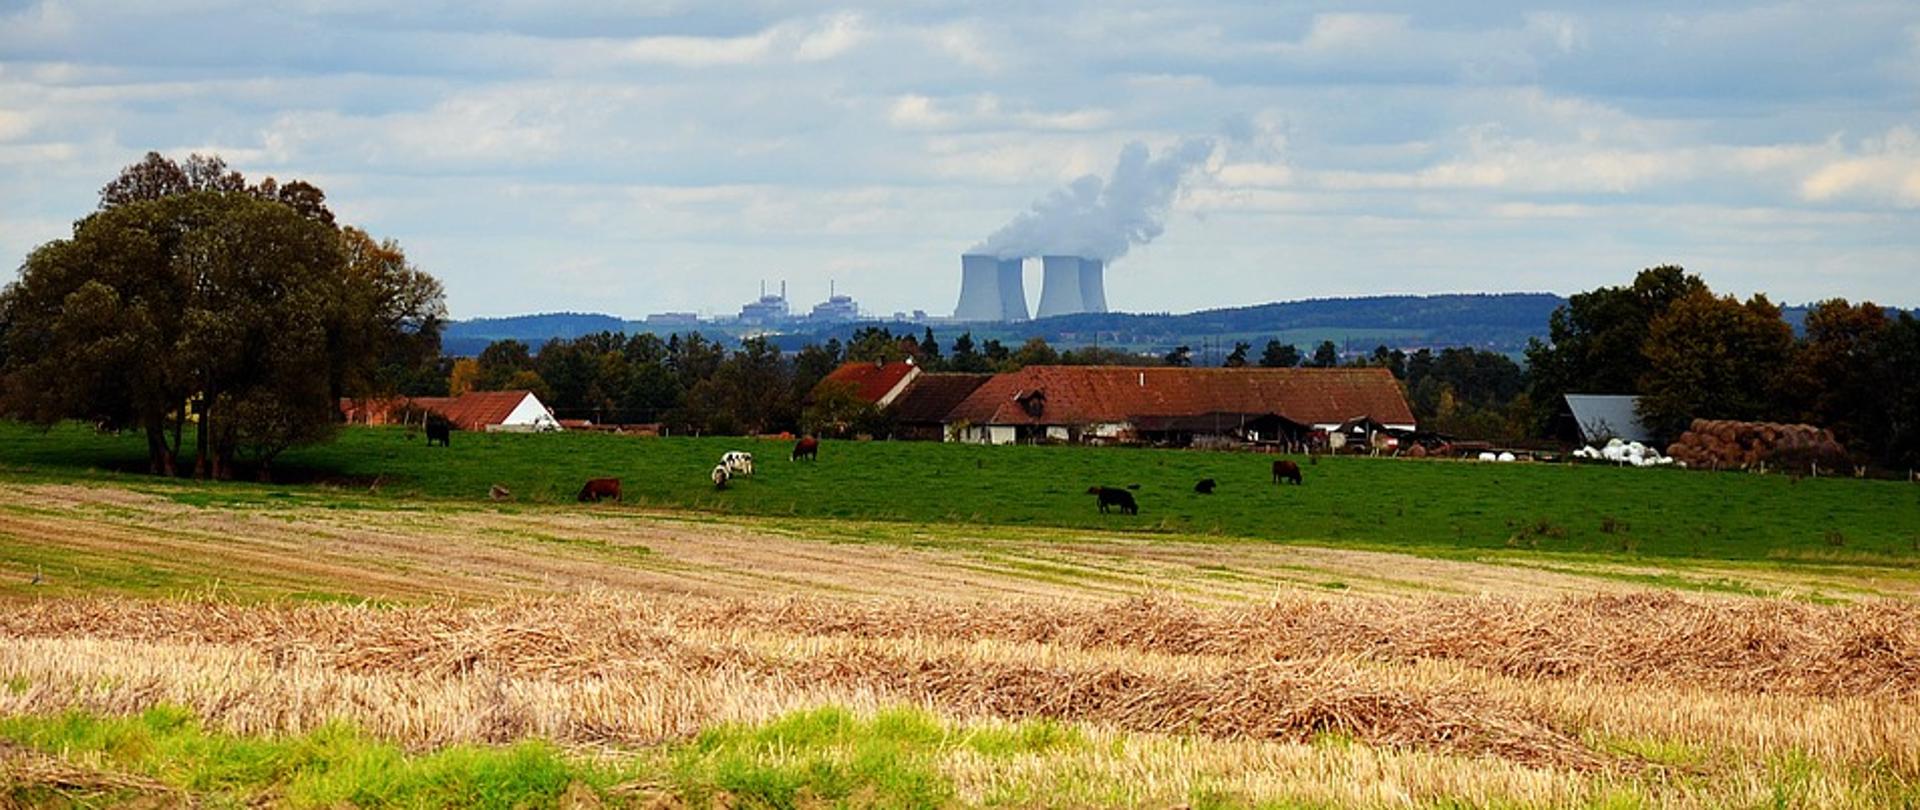 Zdjęcie przedstawiające elektrownię jądrową w Temelinie Na zdjęciu widać pole uprawne, zwierzęta gospodarskie oraz w tle w odległości kilku kilometrów elektrownię jądrową 